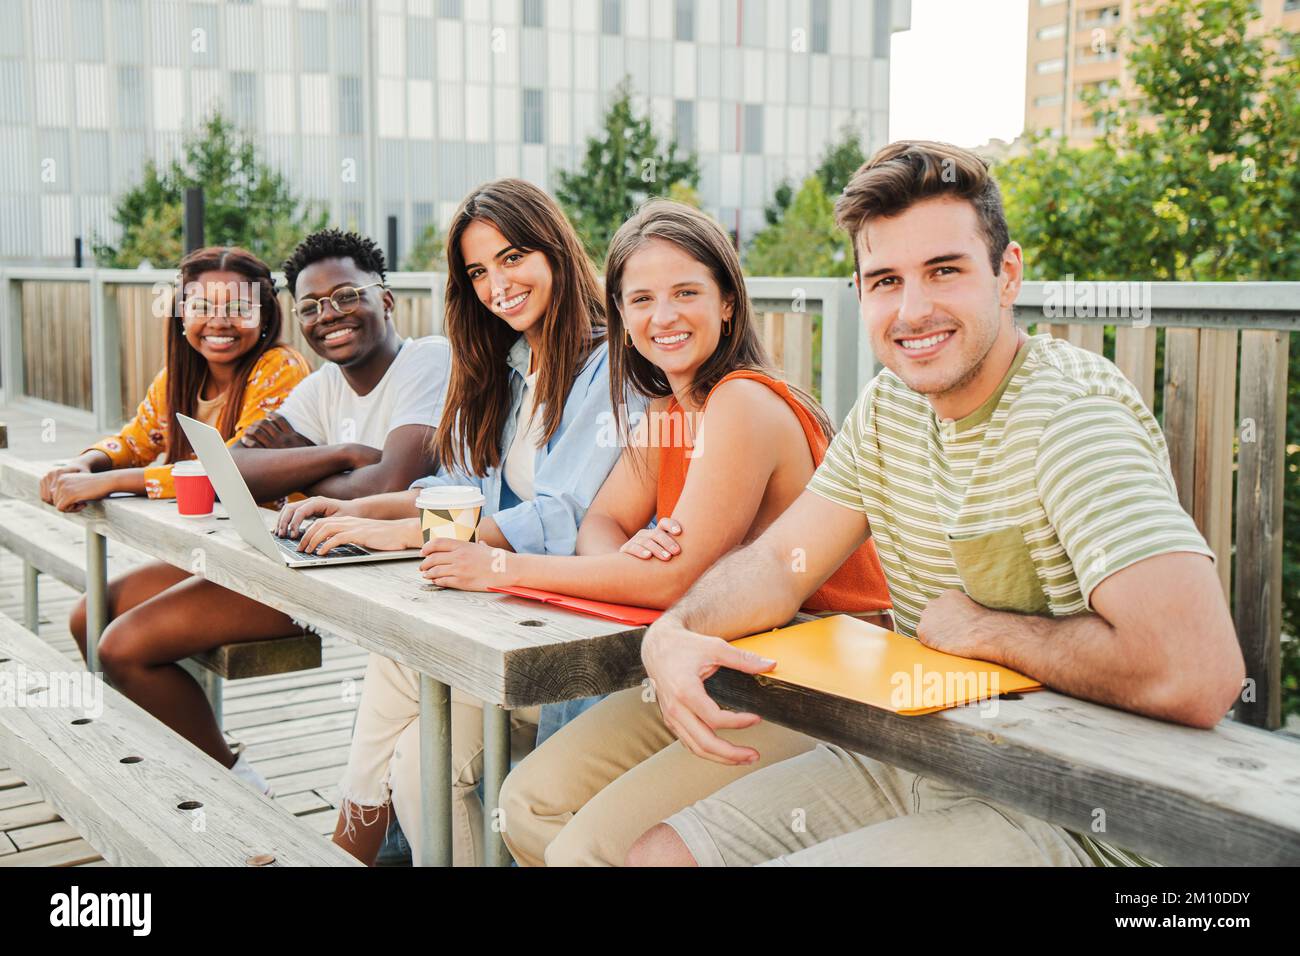 Groupe multiracial d'adolescents heureux regardant la caméra, souriant détendu ensemble à l'extérieur du campus de l'université prenant une pause. Réunion de jeunes et de gens d'université amusant appréciant la lumière du soleil étudiant et posant dans l'attitude positive à l'extérieur. Concept d'éducation. Photo de haute qualité Banque D'Images